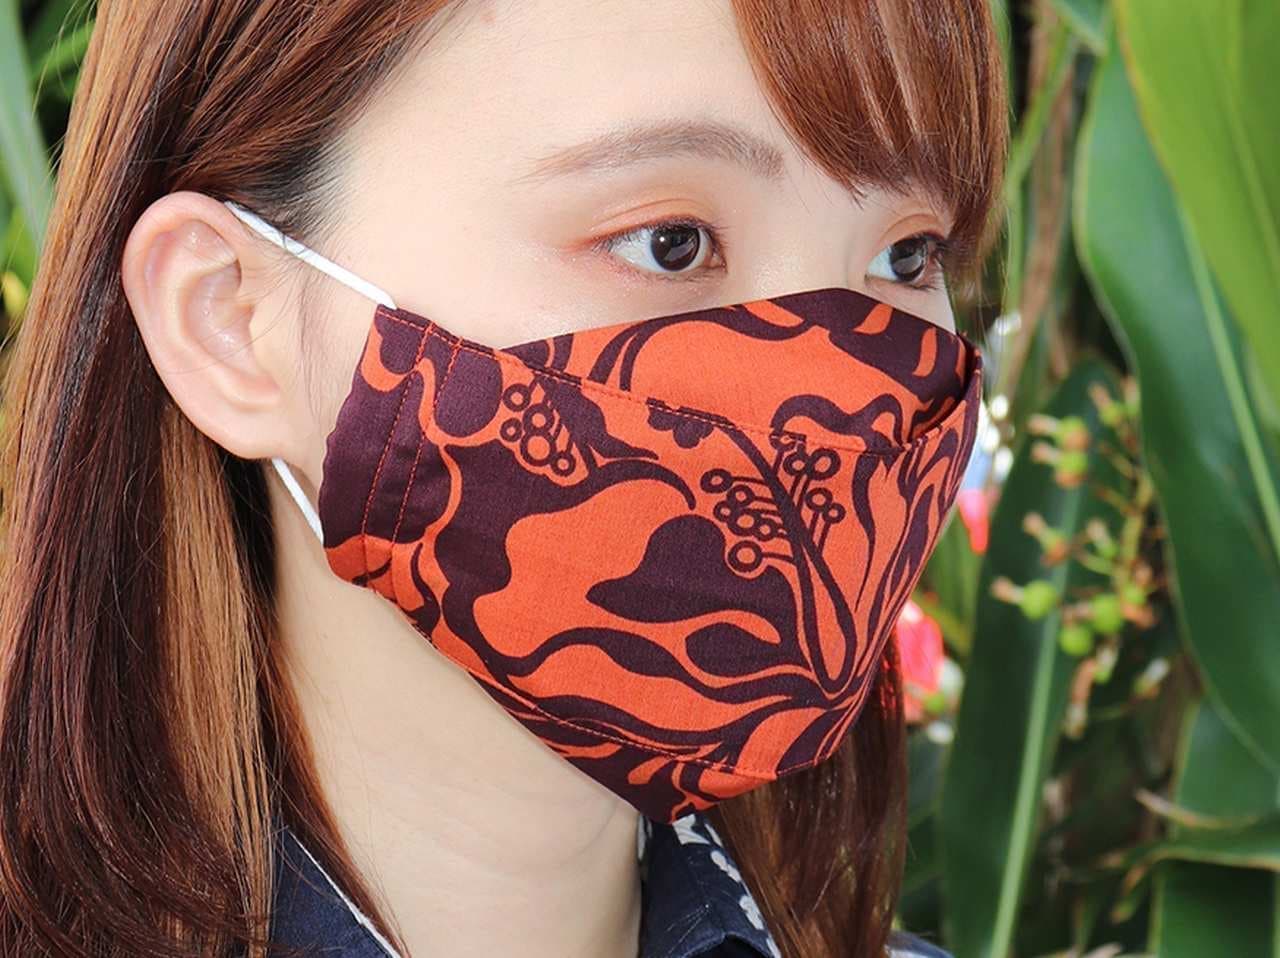 かりゆしウェア生地のマスク「MAJUNオリジナル布マスク」に吸汗速乾素材を使用した「MAJUNオリジナル夏用布マスク」